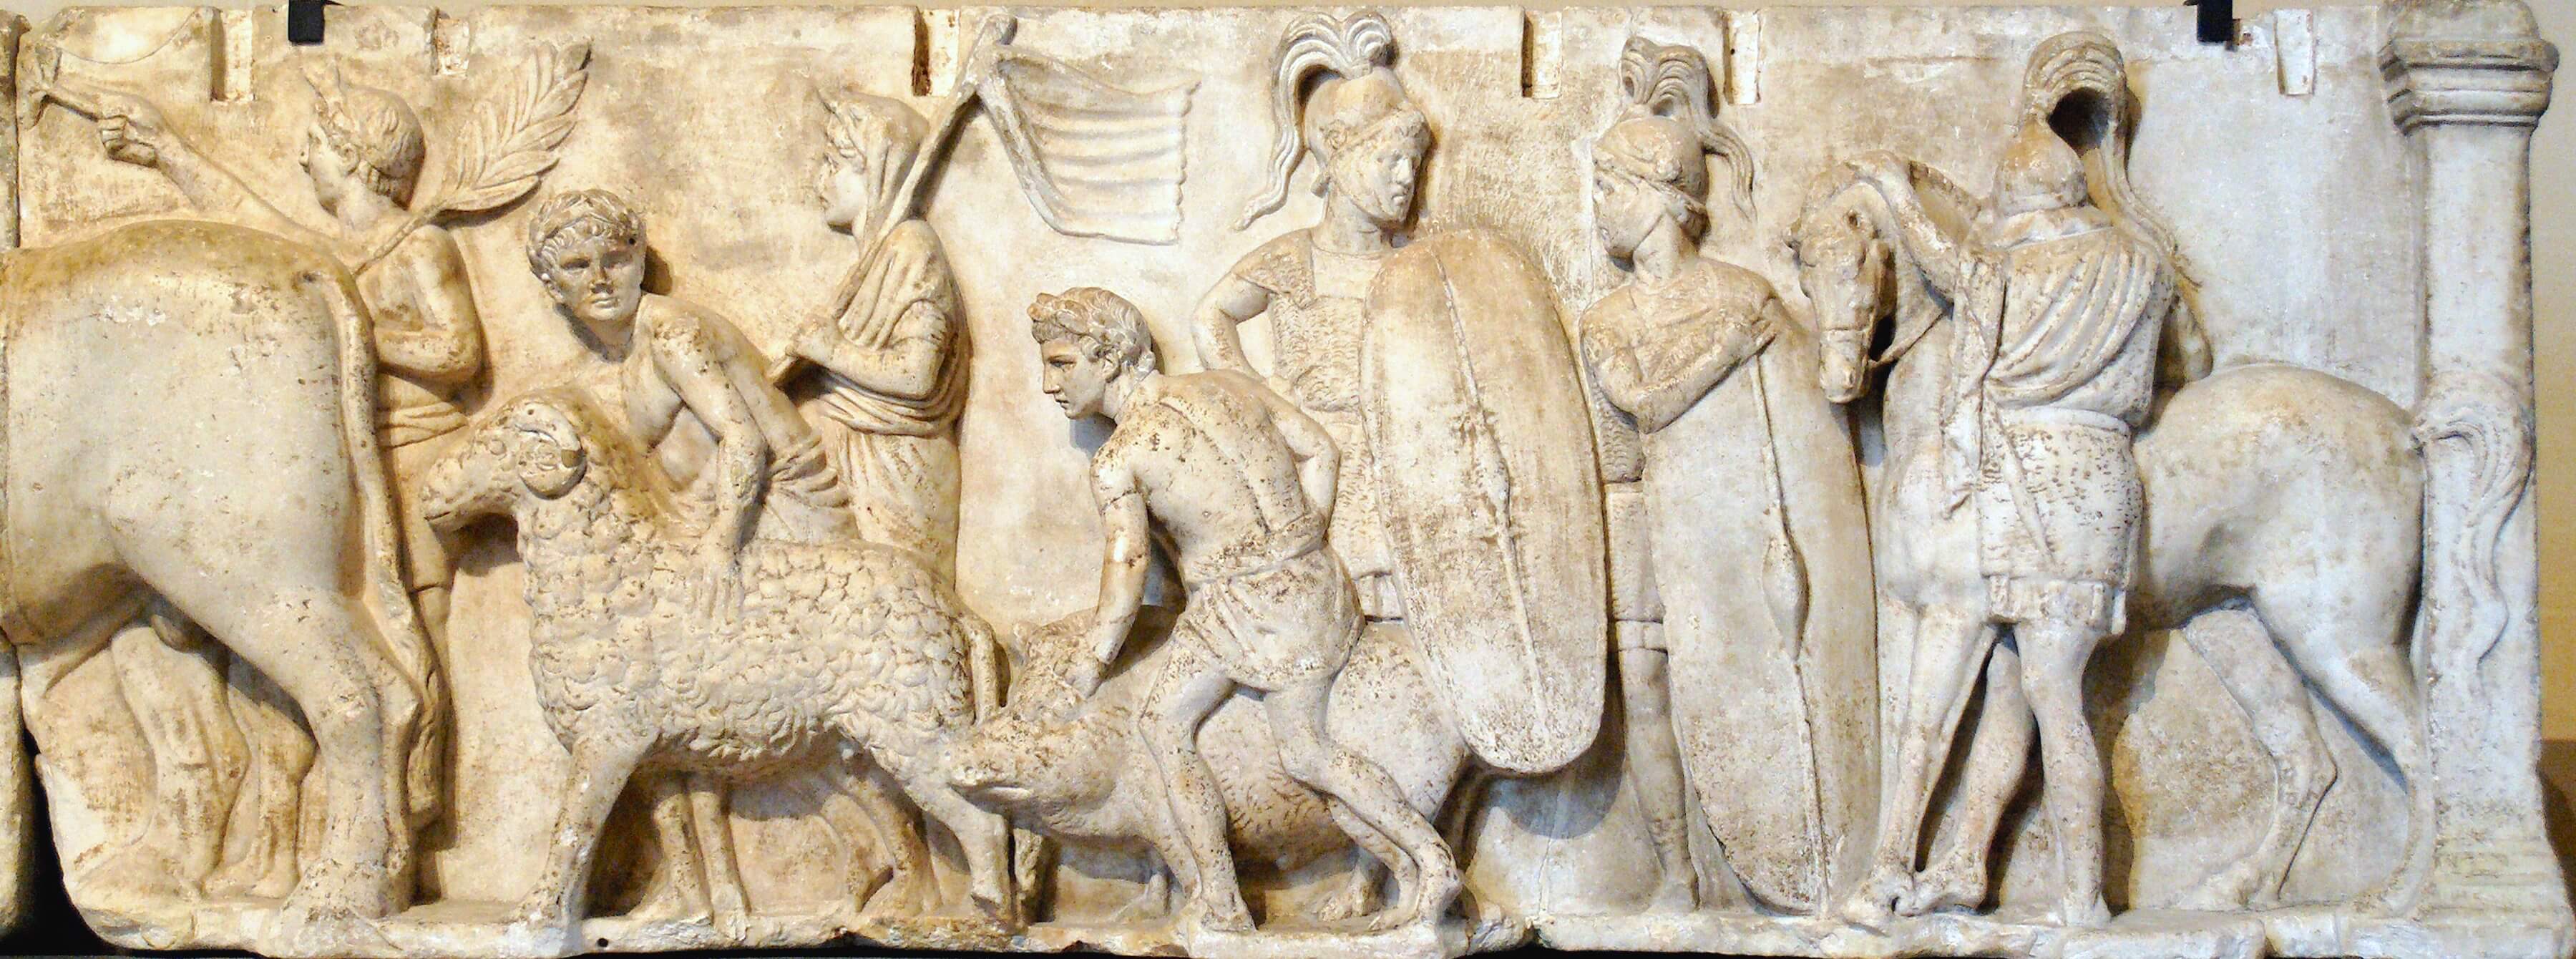 Deel van het marmeren, Romeinse kunstwerk 'Altar of Domitius Ahenobarbus', bekend als de 'Census Frieze', uit de late 2e eeuw voor Christus. © Jastrow / Flickr